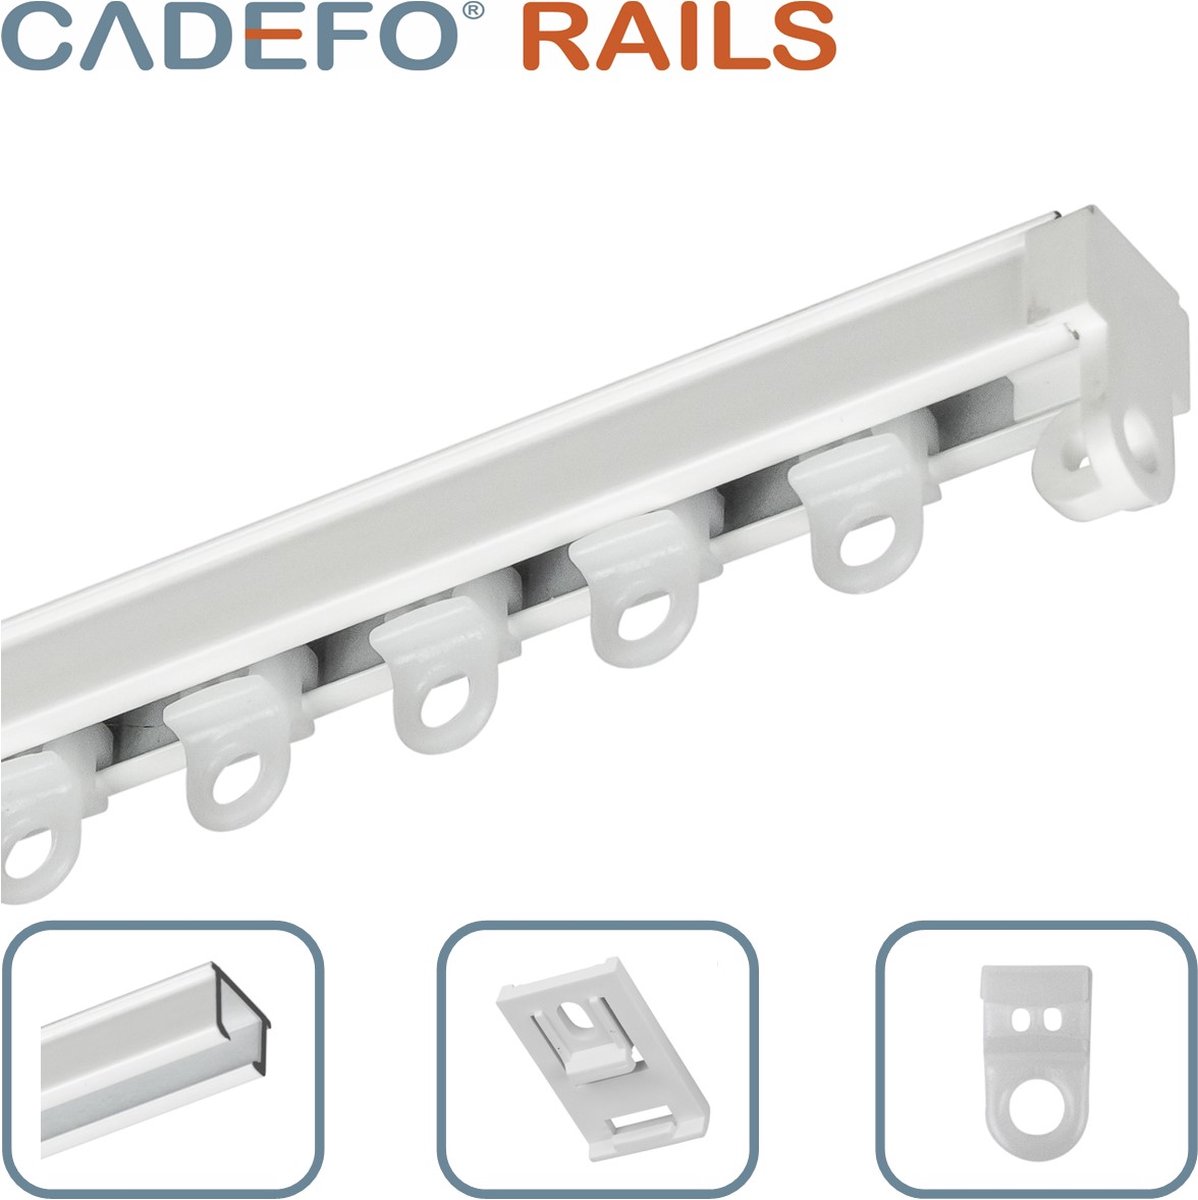 CADEFO RAILS (151 - 200 cm) Gordijnrails - Compleet op maat! - UIT 1 STUK - Leverbaar tot 6 meter - Plafondbevestiging - Lengte 172 cm